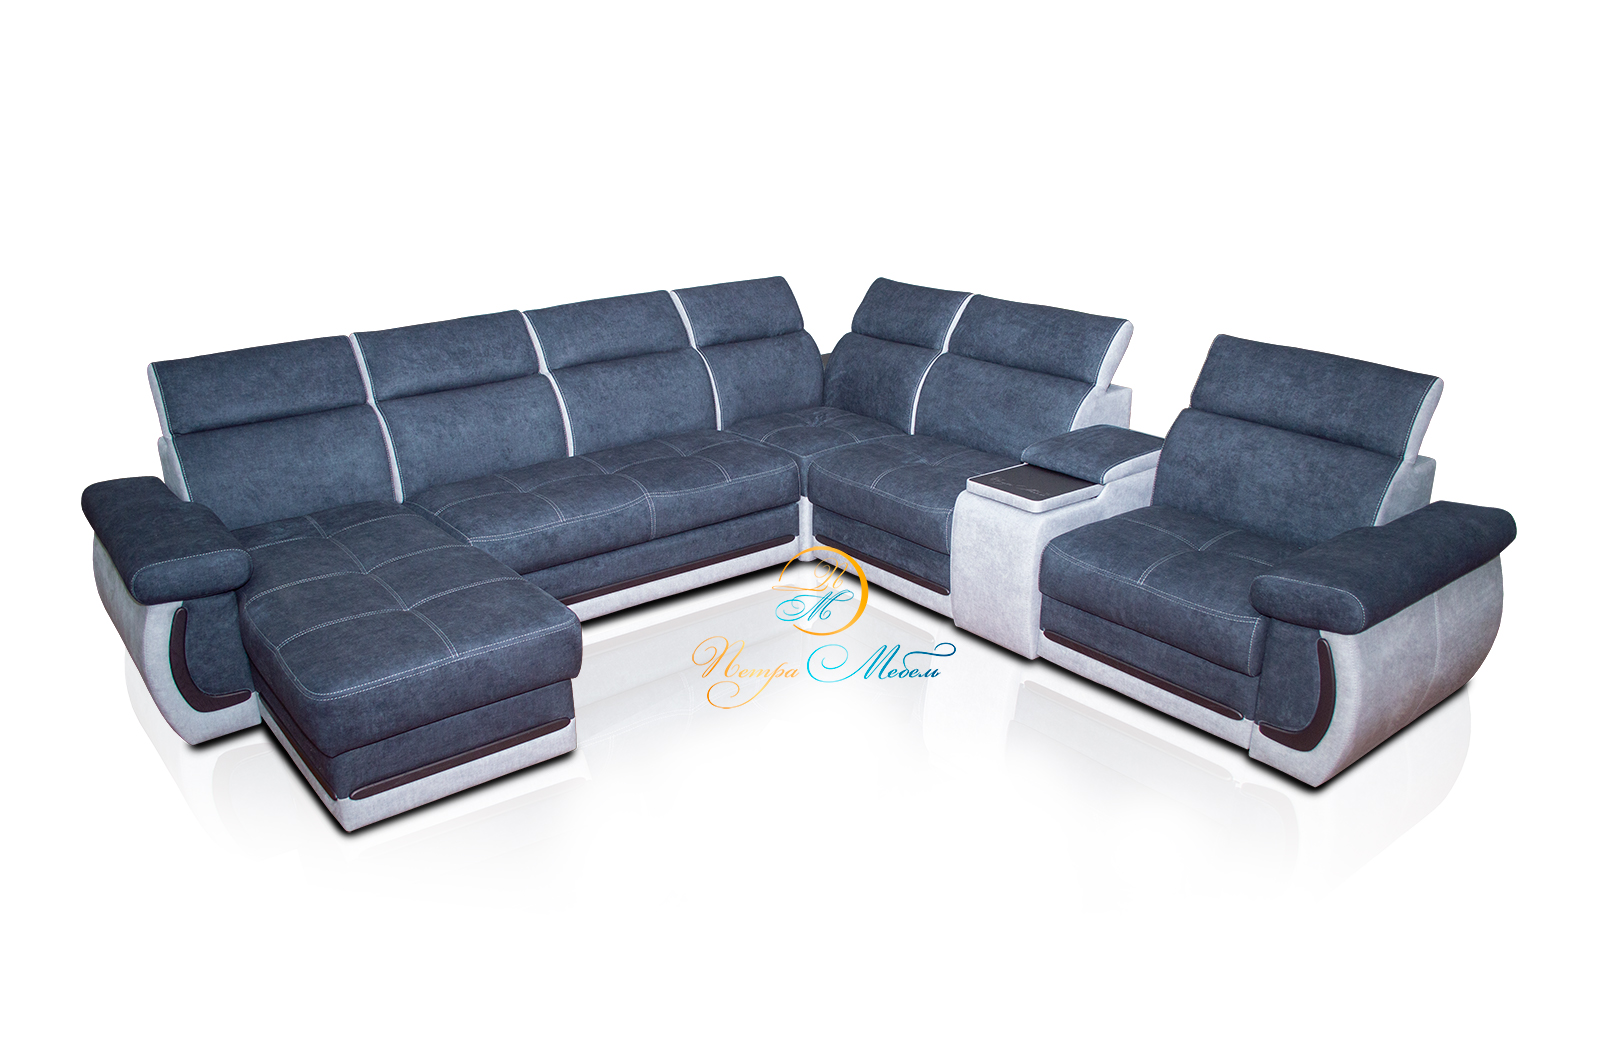 Модульный диван «Браво Люкс» – изображение 1